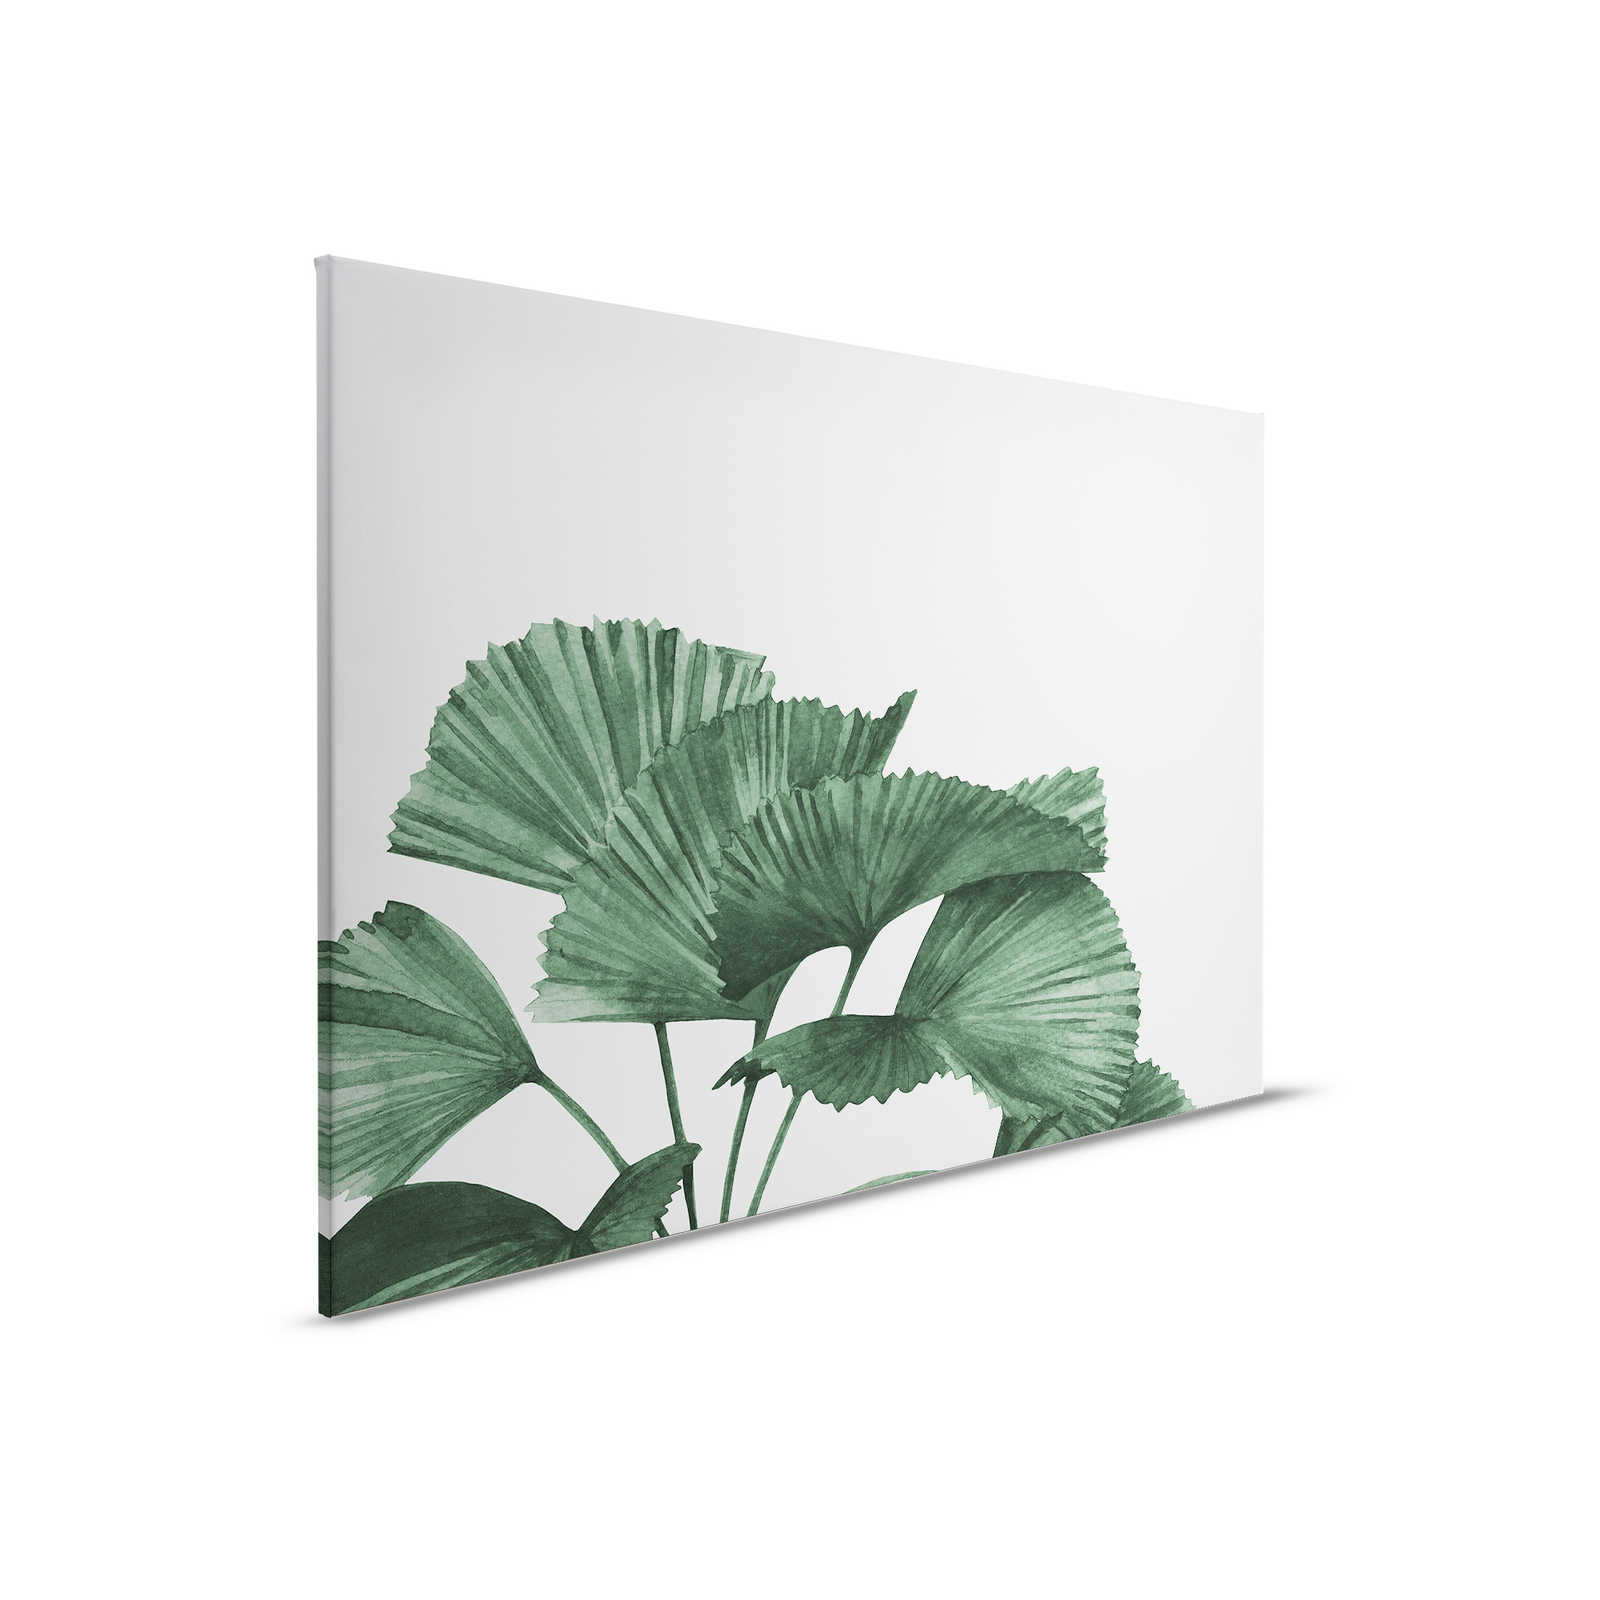 Leinwandbild mit großen Blättern einer Strahlenpalme – 0,90 m x 0,60 m
